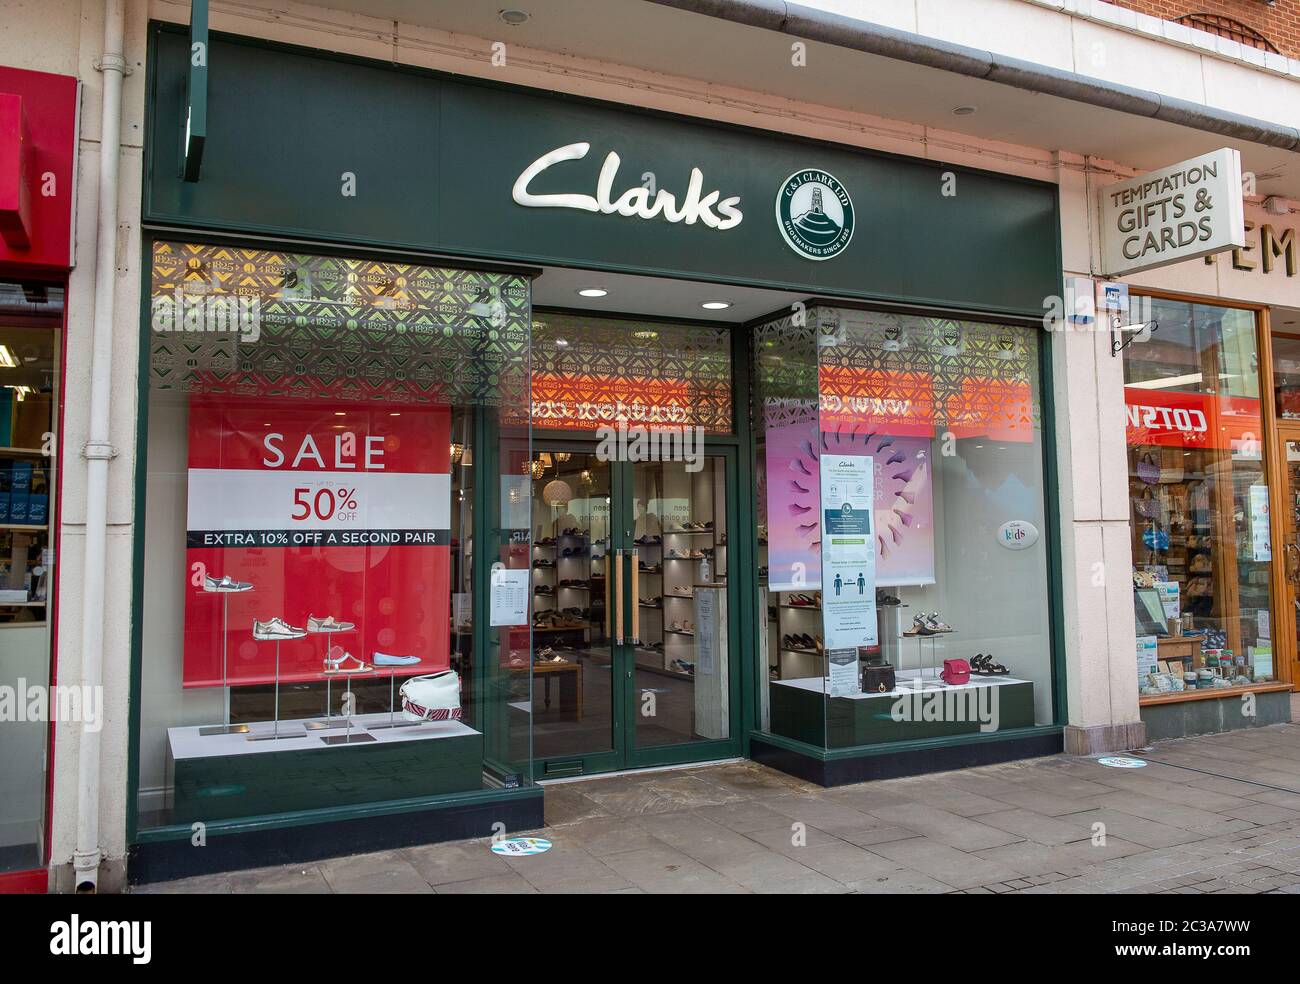 clarks store newbury